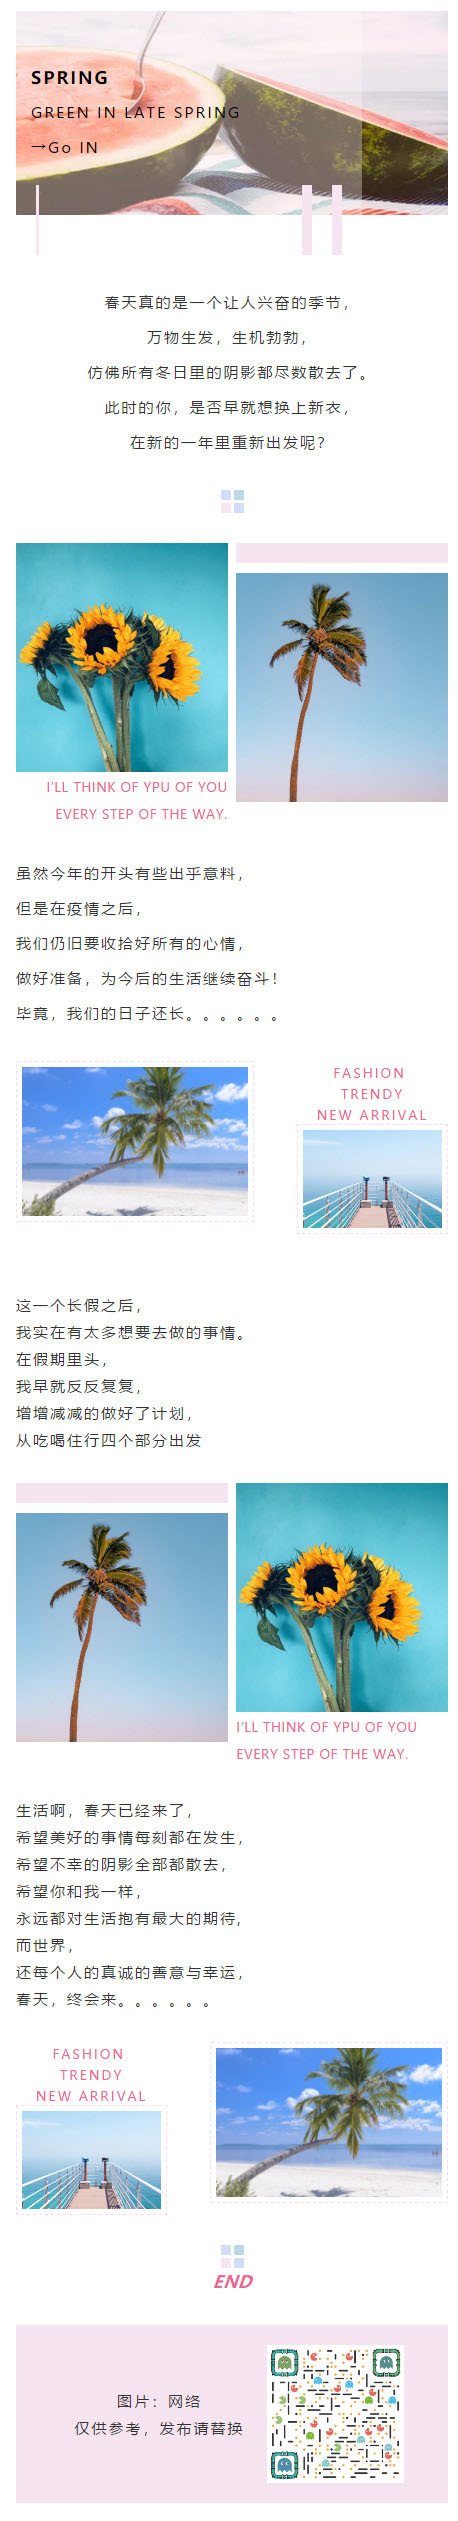 旅游度假夏天清新风格模板大海西瓜椰树订阅号推文模板